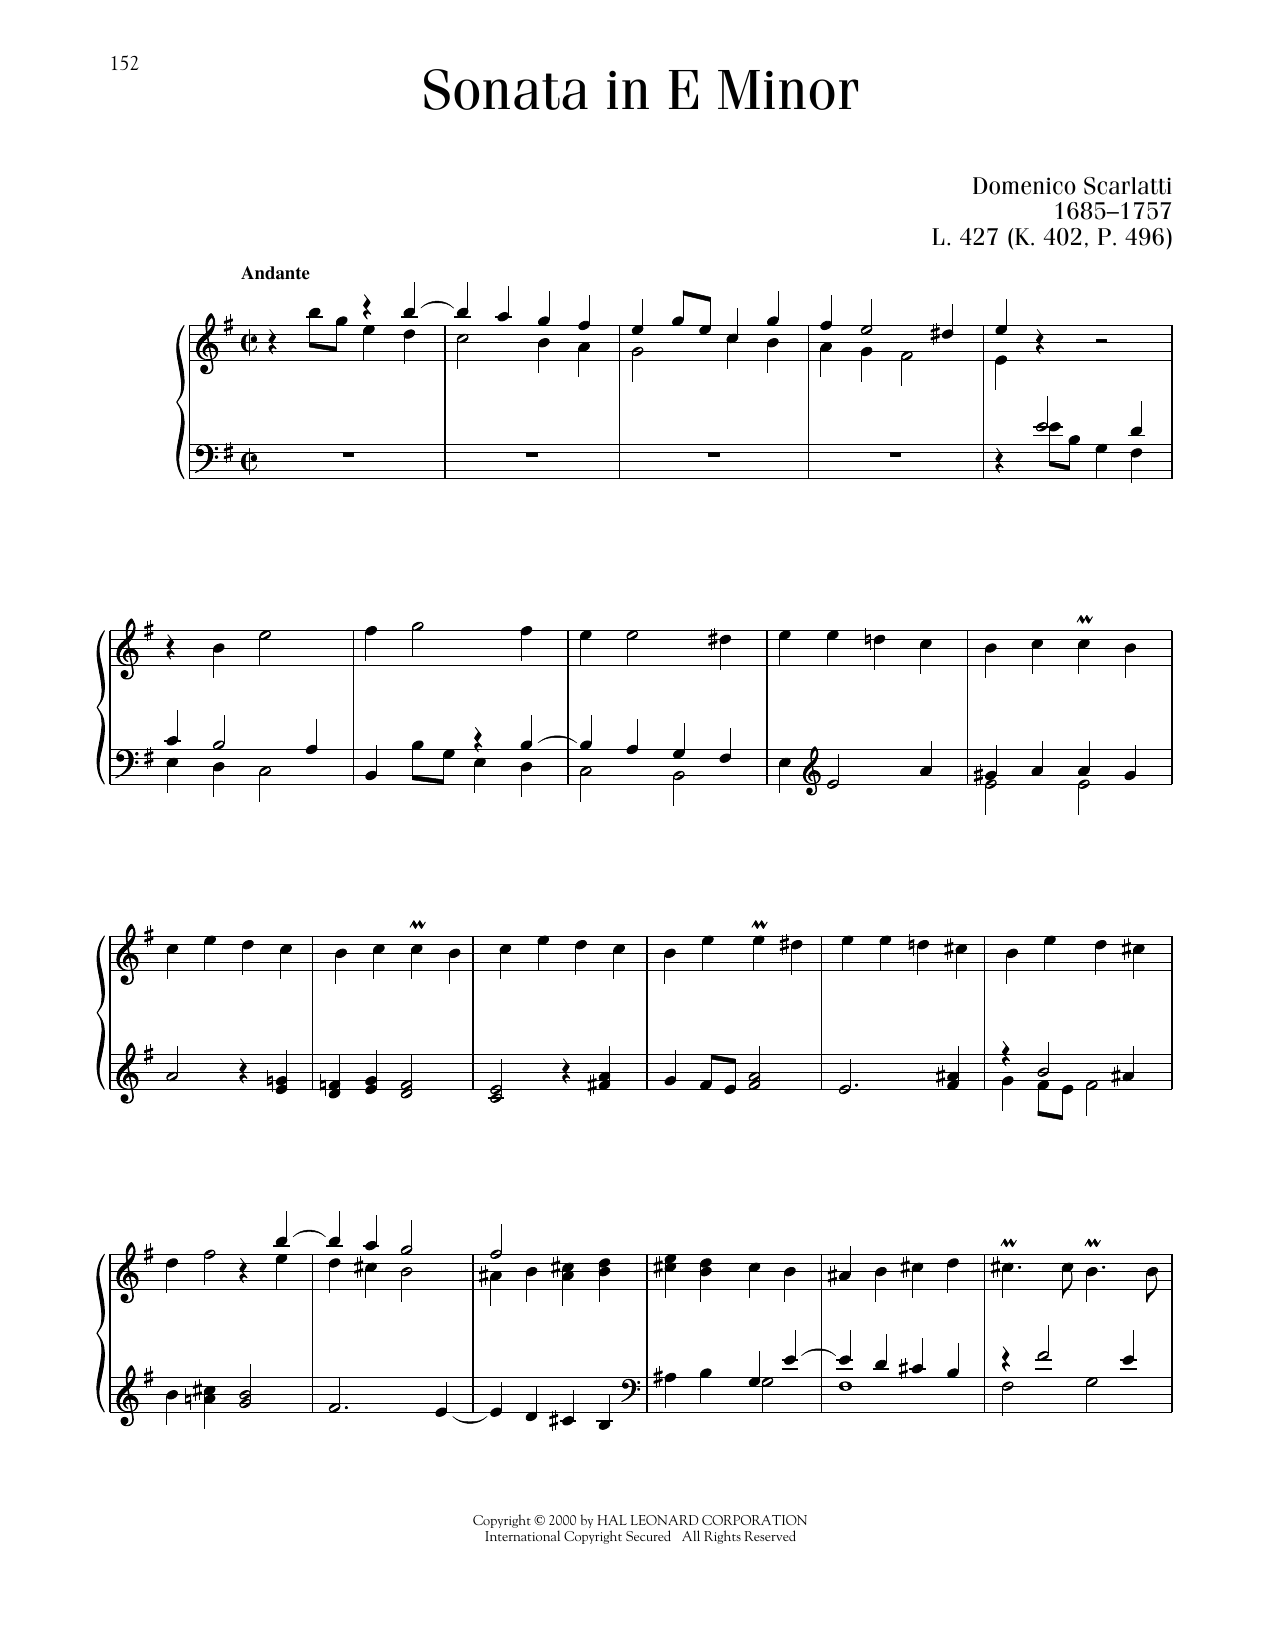 Domenico Scarlatti Sonata In E Minor, K. 402 Sheet Music Notes & Chords for Piano Solo - Download or Print PDF